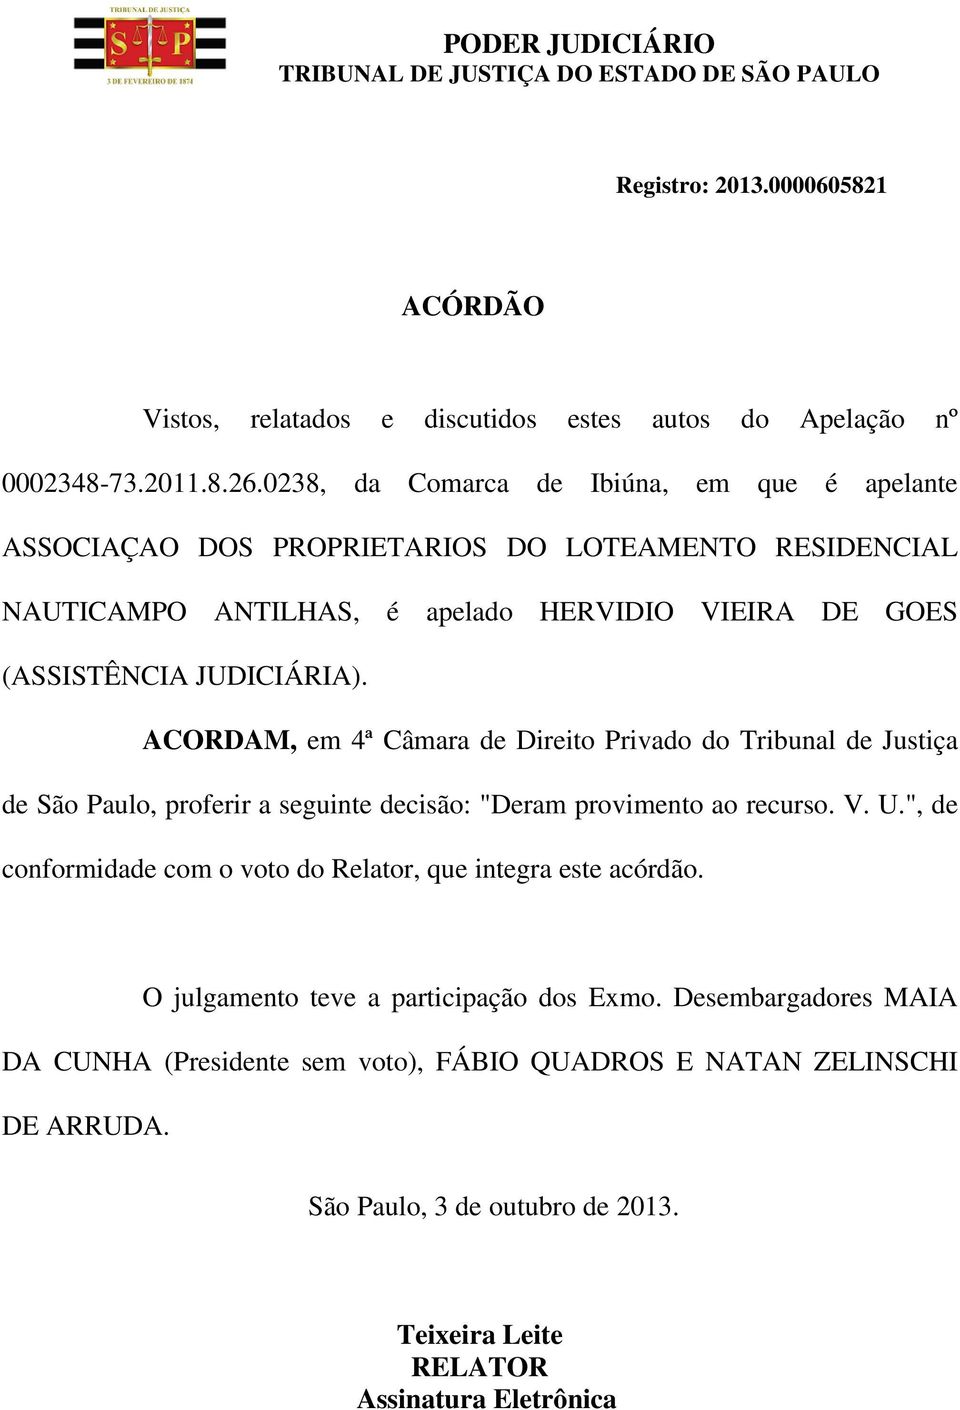 ACORDAM, em 4ª Câmara de Direito Privado do Tribunal de Justiça de São Paulo, proferir a seguinte decisão: "Deram provimento ao recurso. V. U.